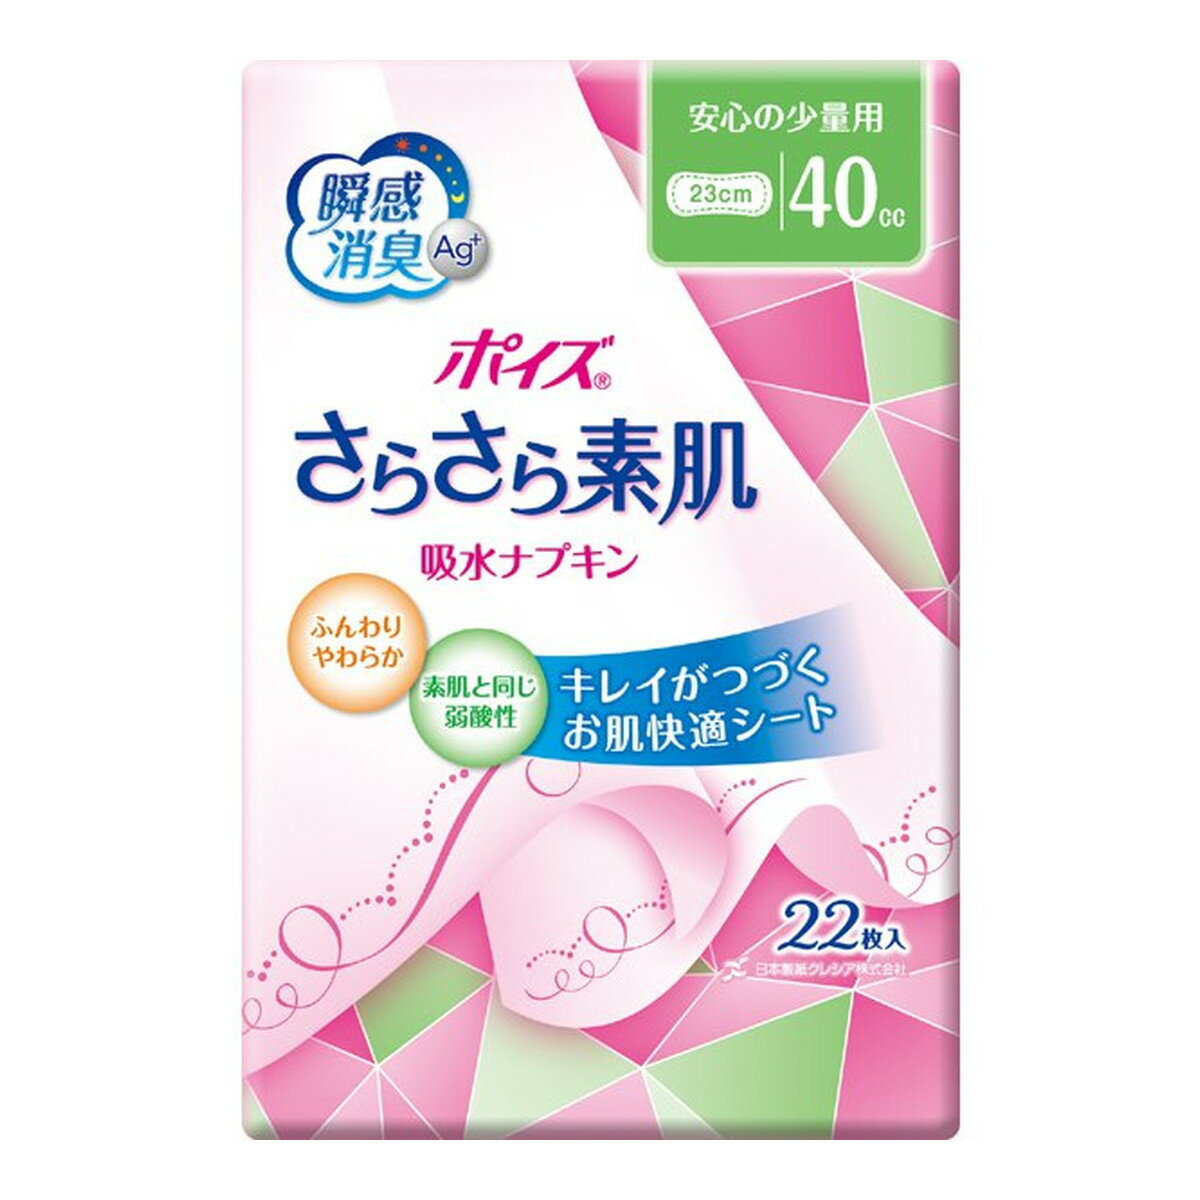 日本製紙クレシア ポイズ さらさら素肌 吸水ナプキン 安心の少量用 40cc 22枚入